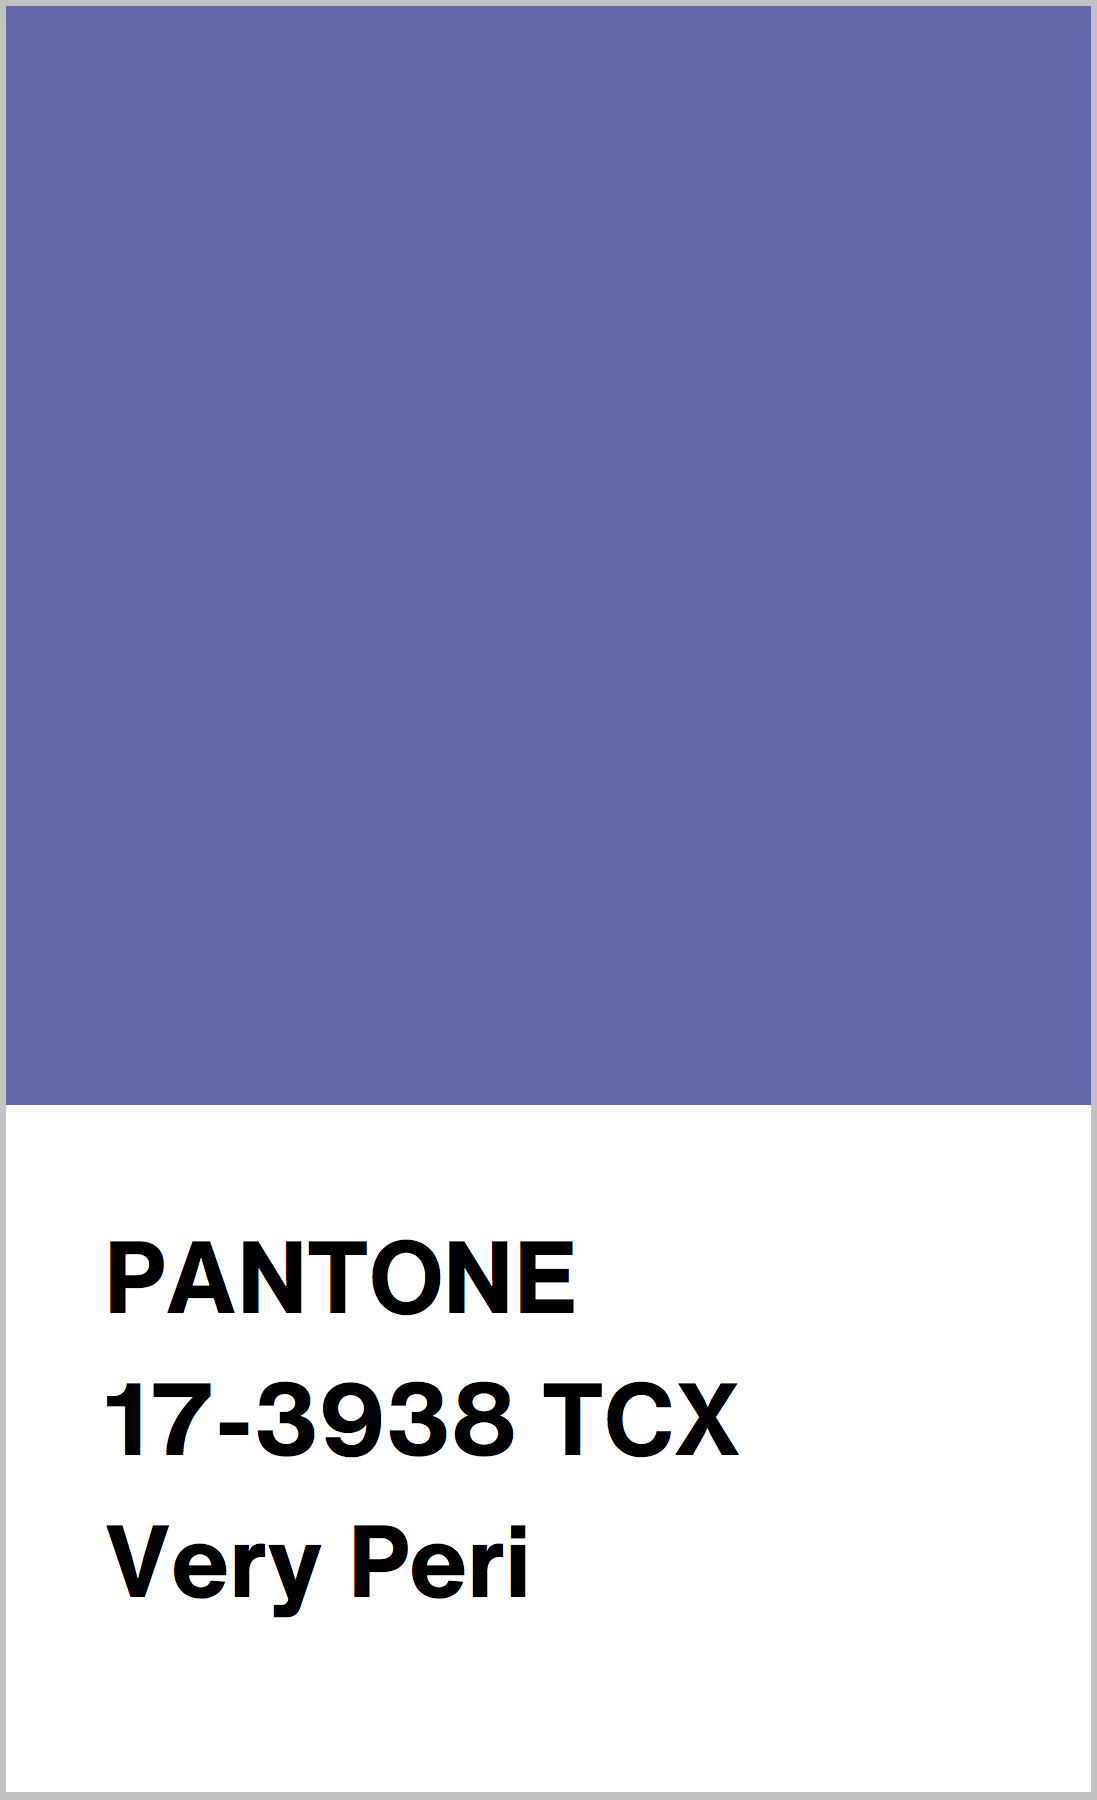 Pantone 17 3938 Very Peri